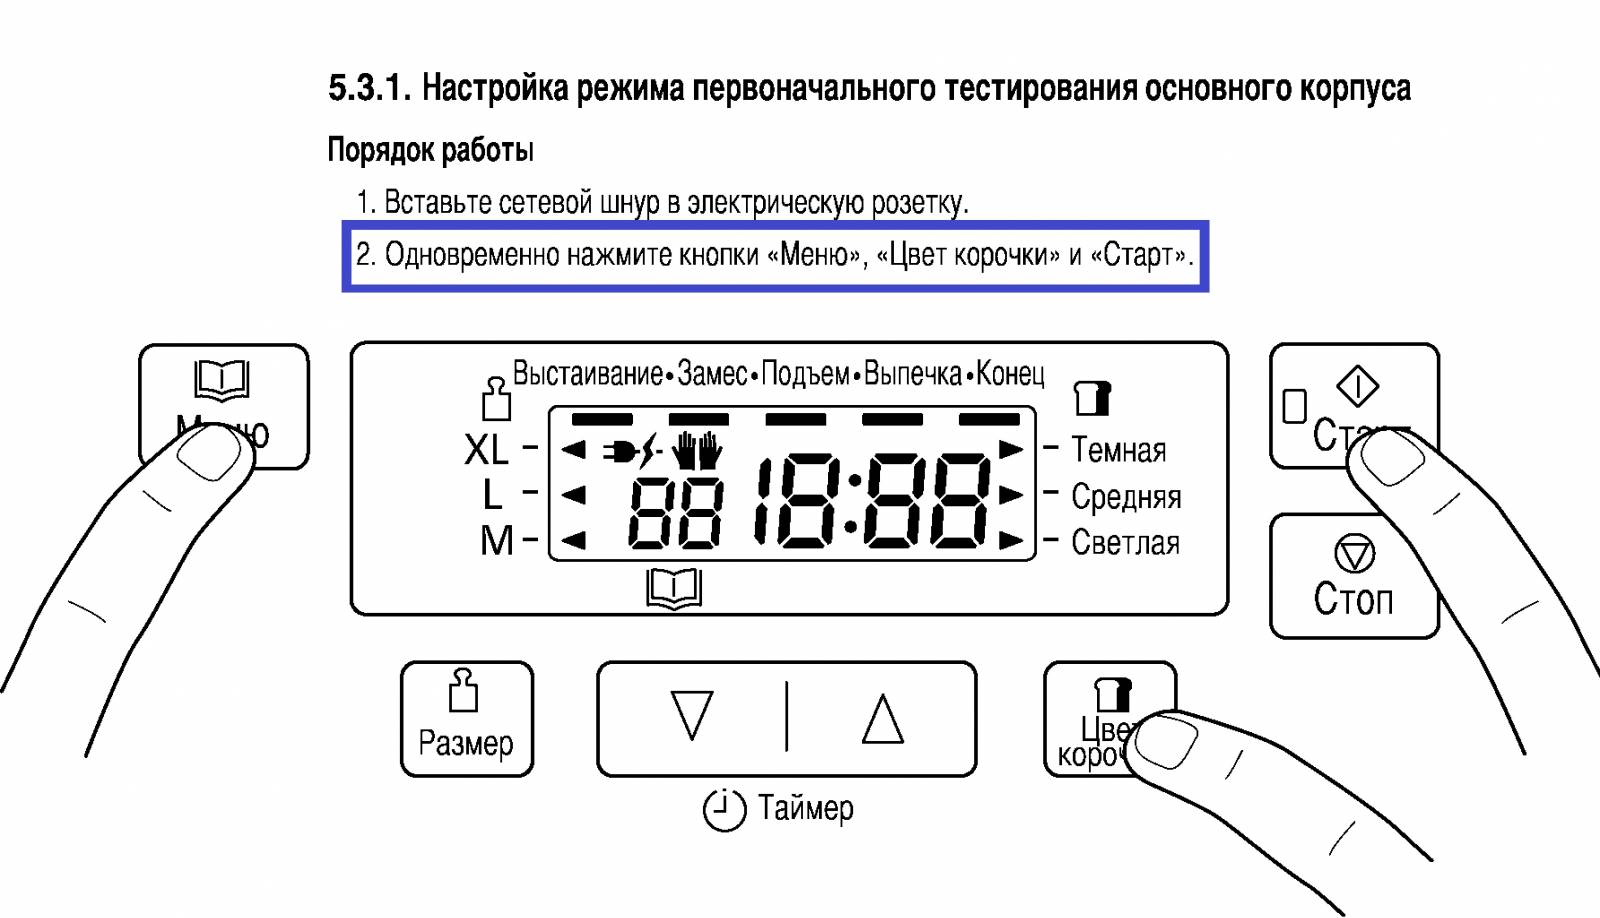 A teszt meleg emelkedése Panasonic SD-2501 szerviz módban